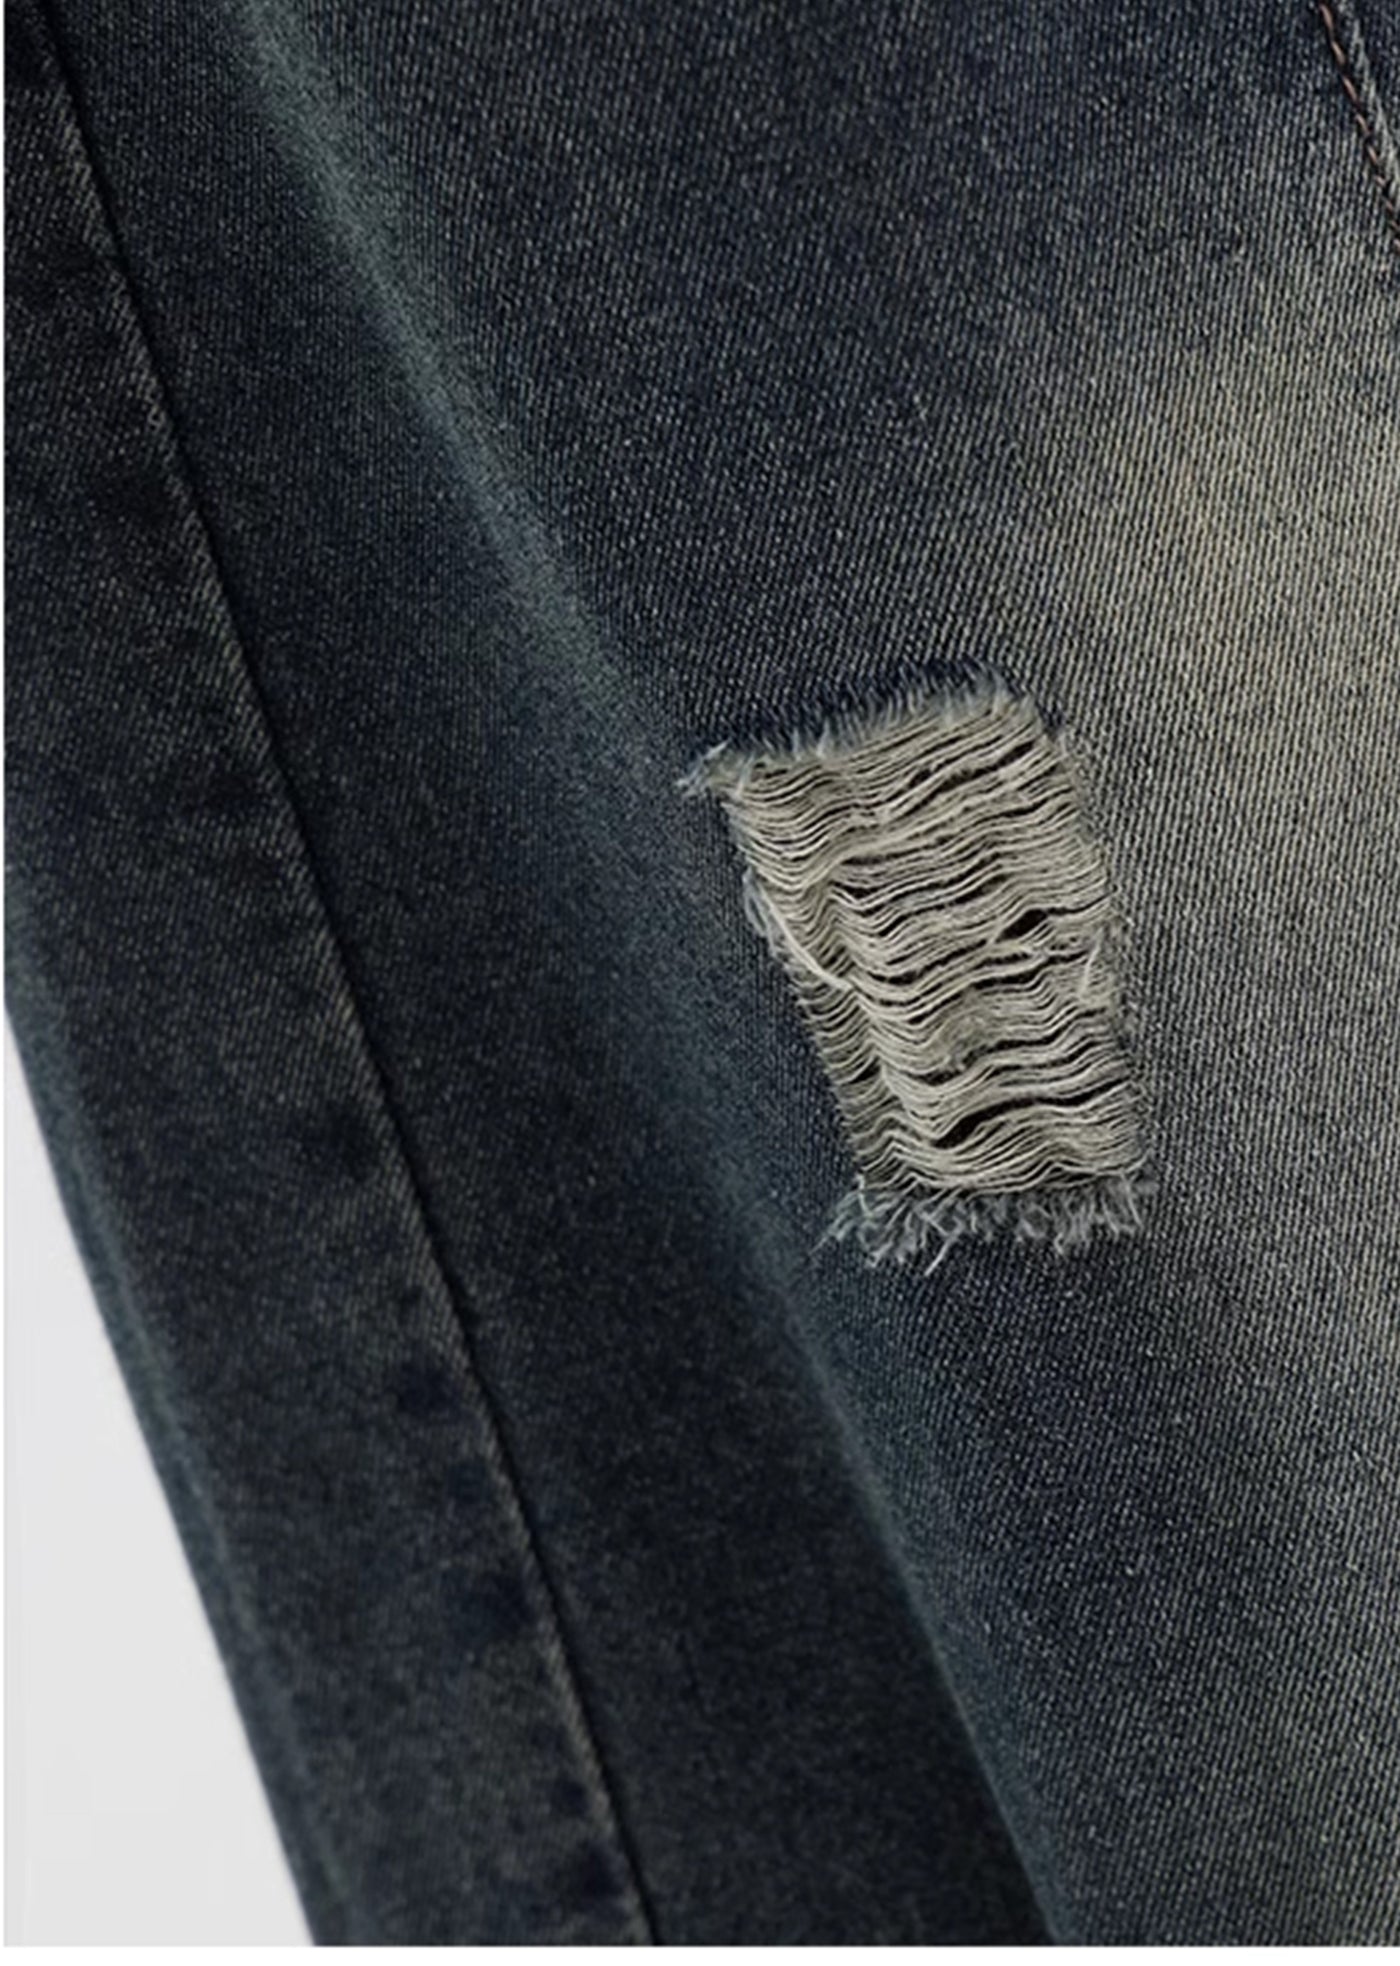 【Ken studio】Suspender design blue washed denim pants  KS0007